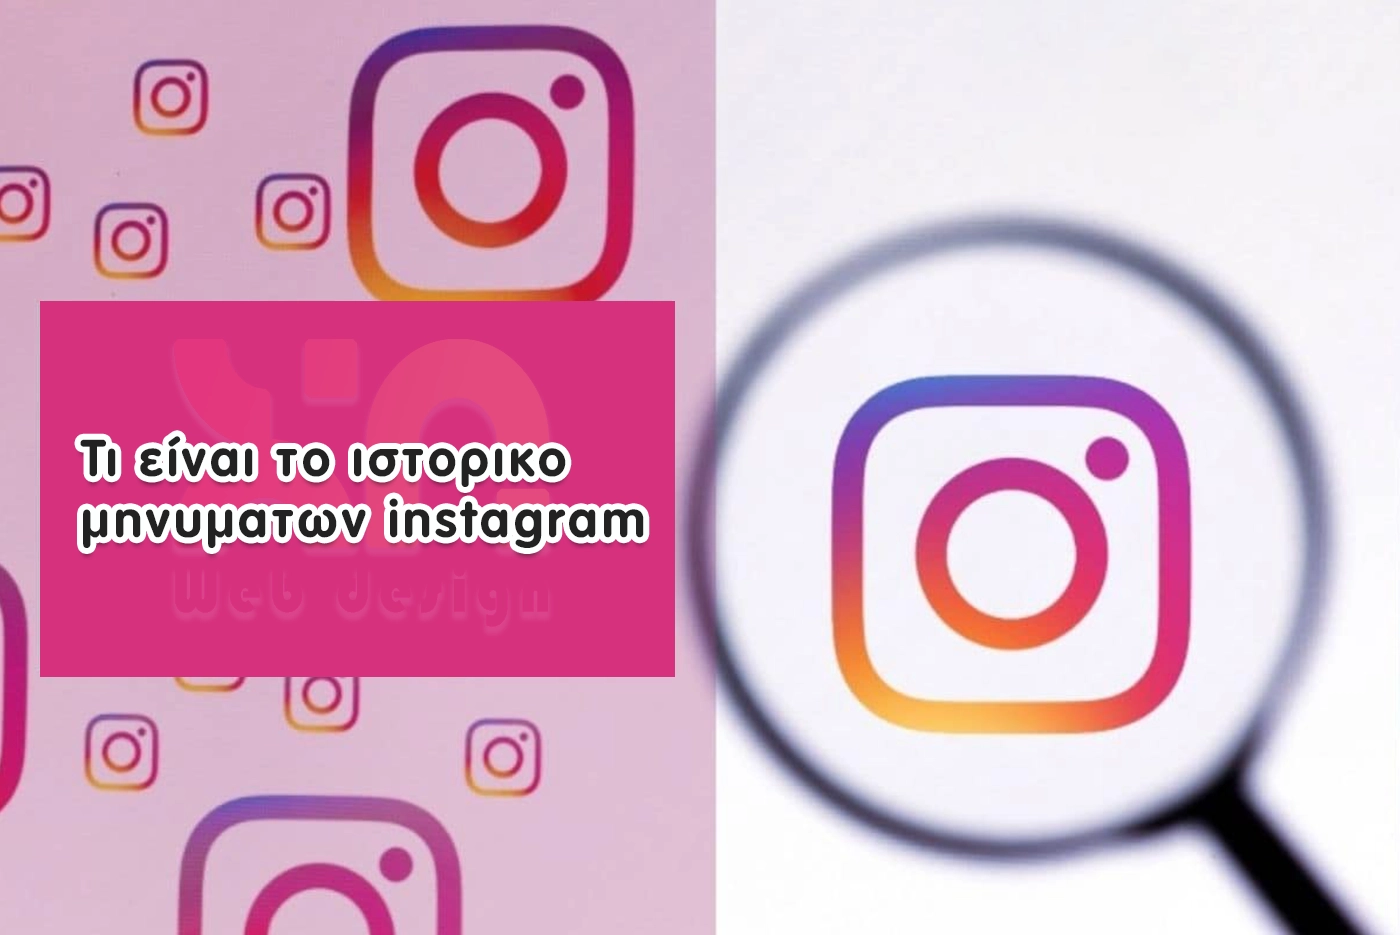 Τι είναι το ιστορικο μηνυματων instagram